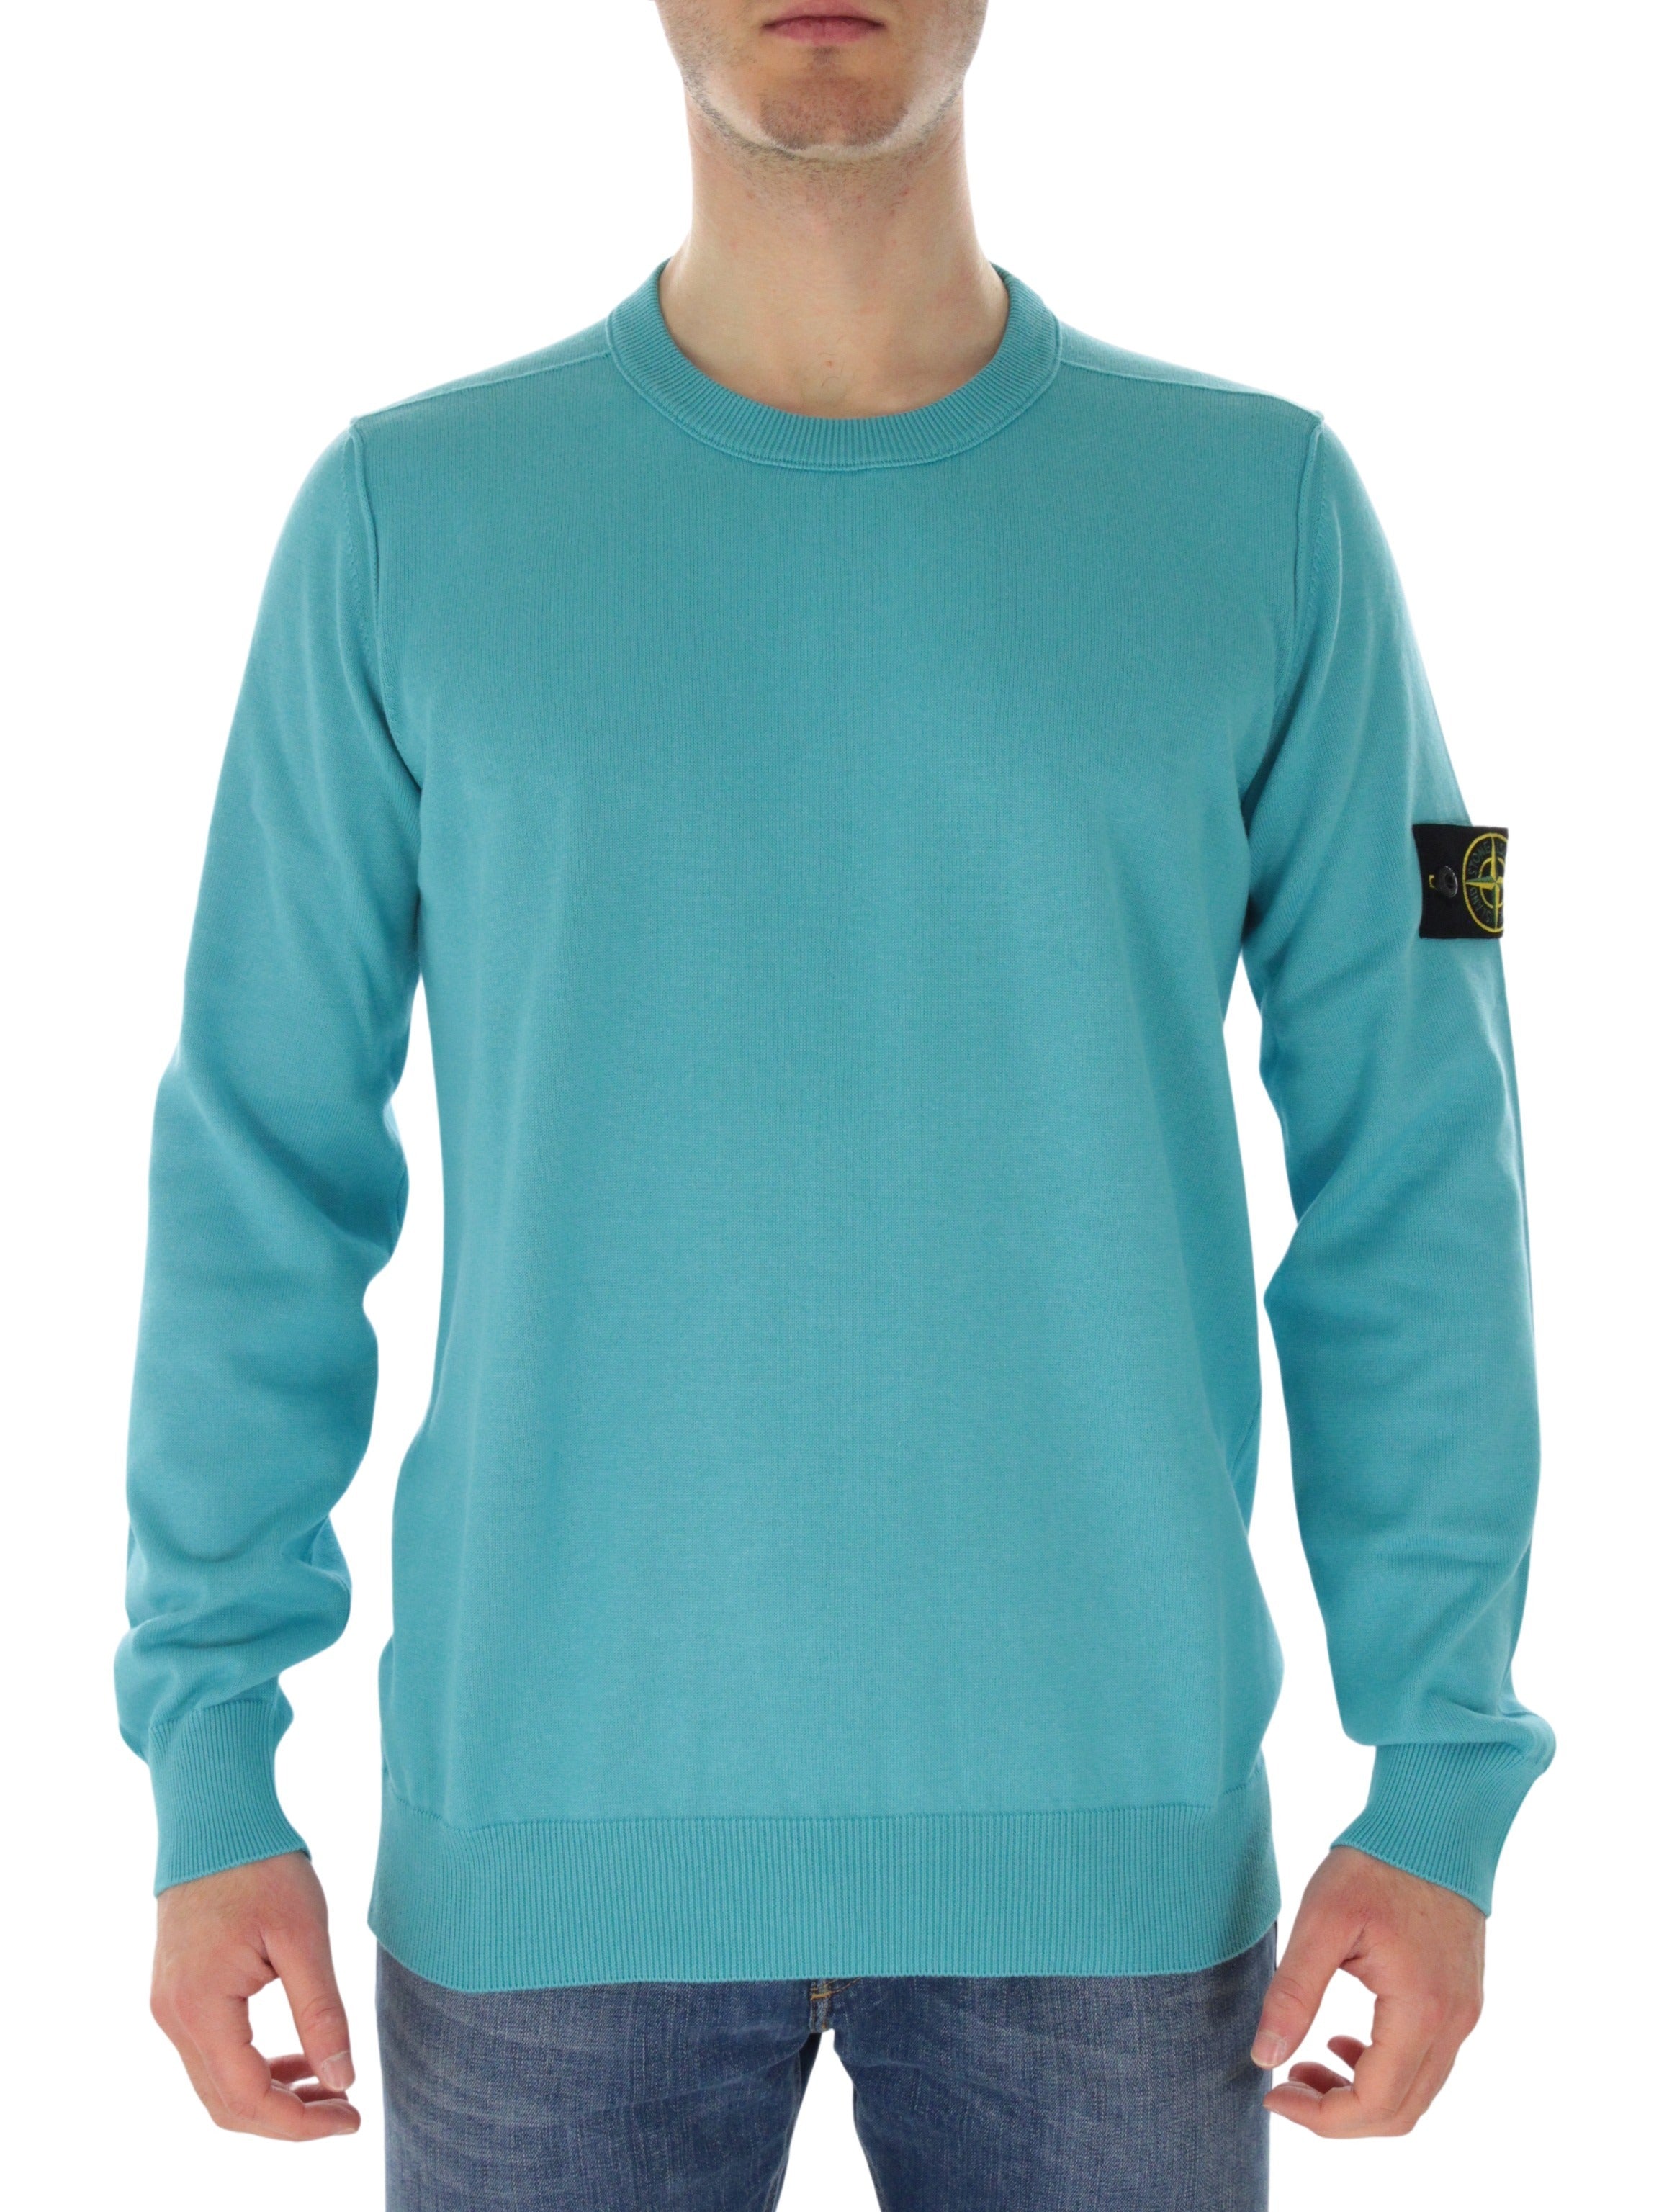 1015540 turquoise shirt